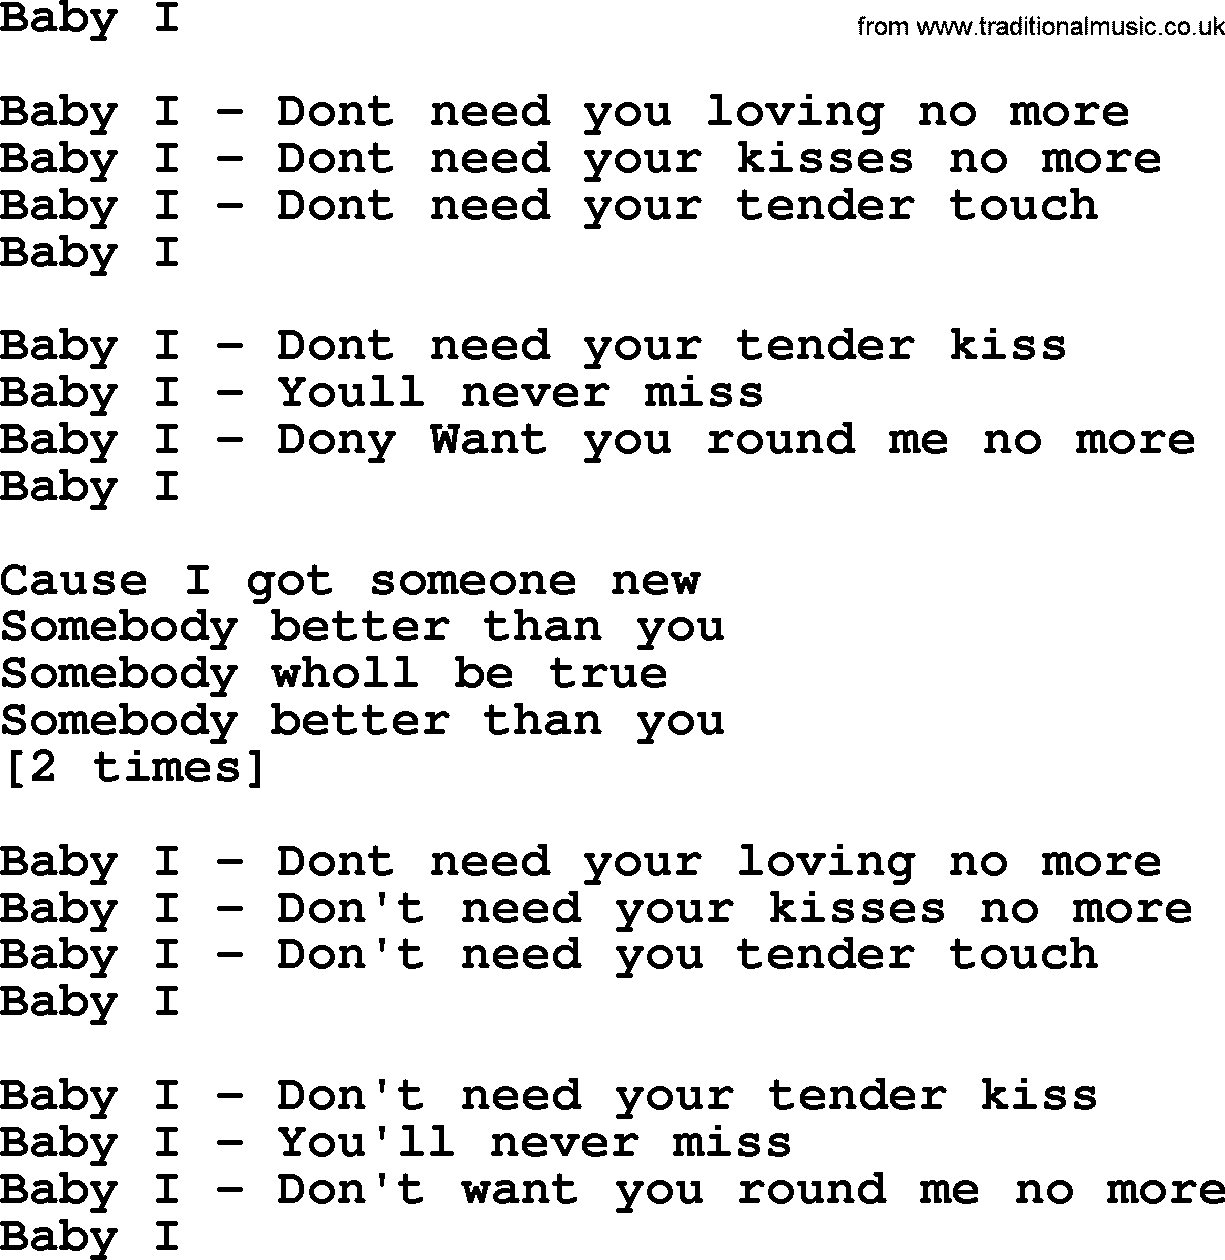 Bruce Springsteen song: Baby I lyrics